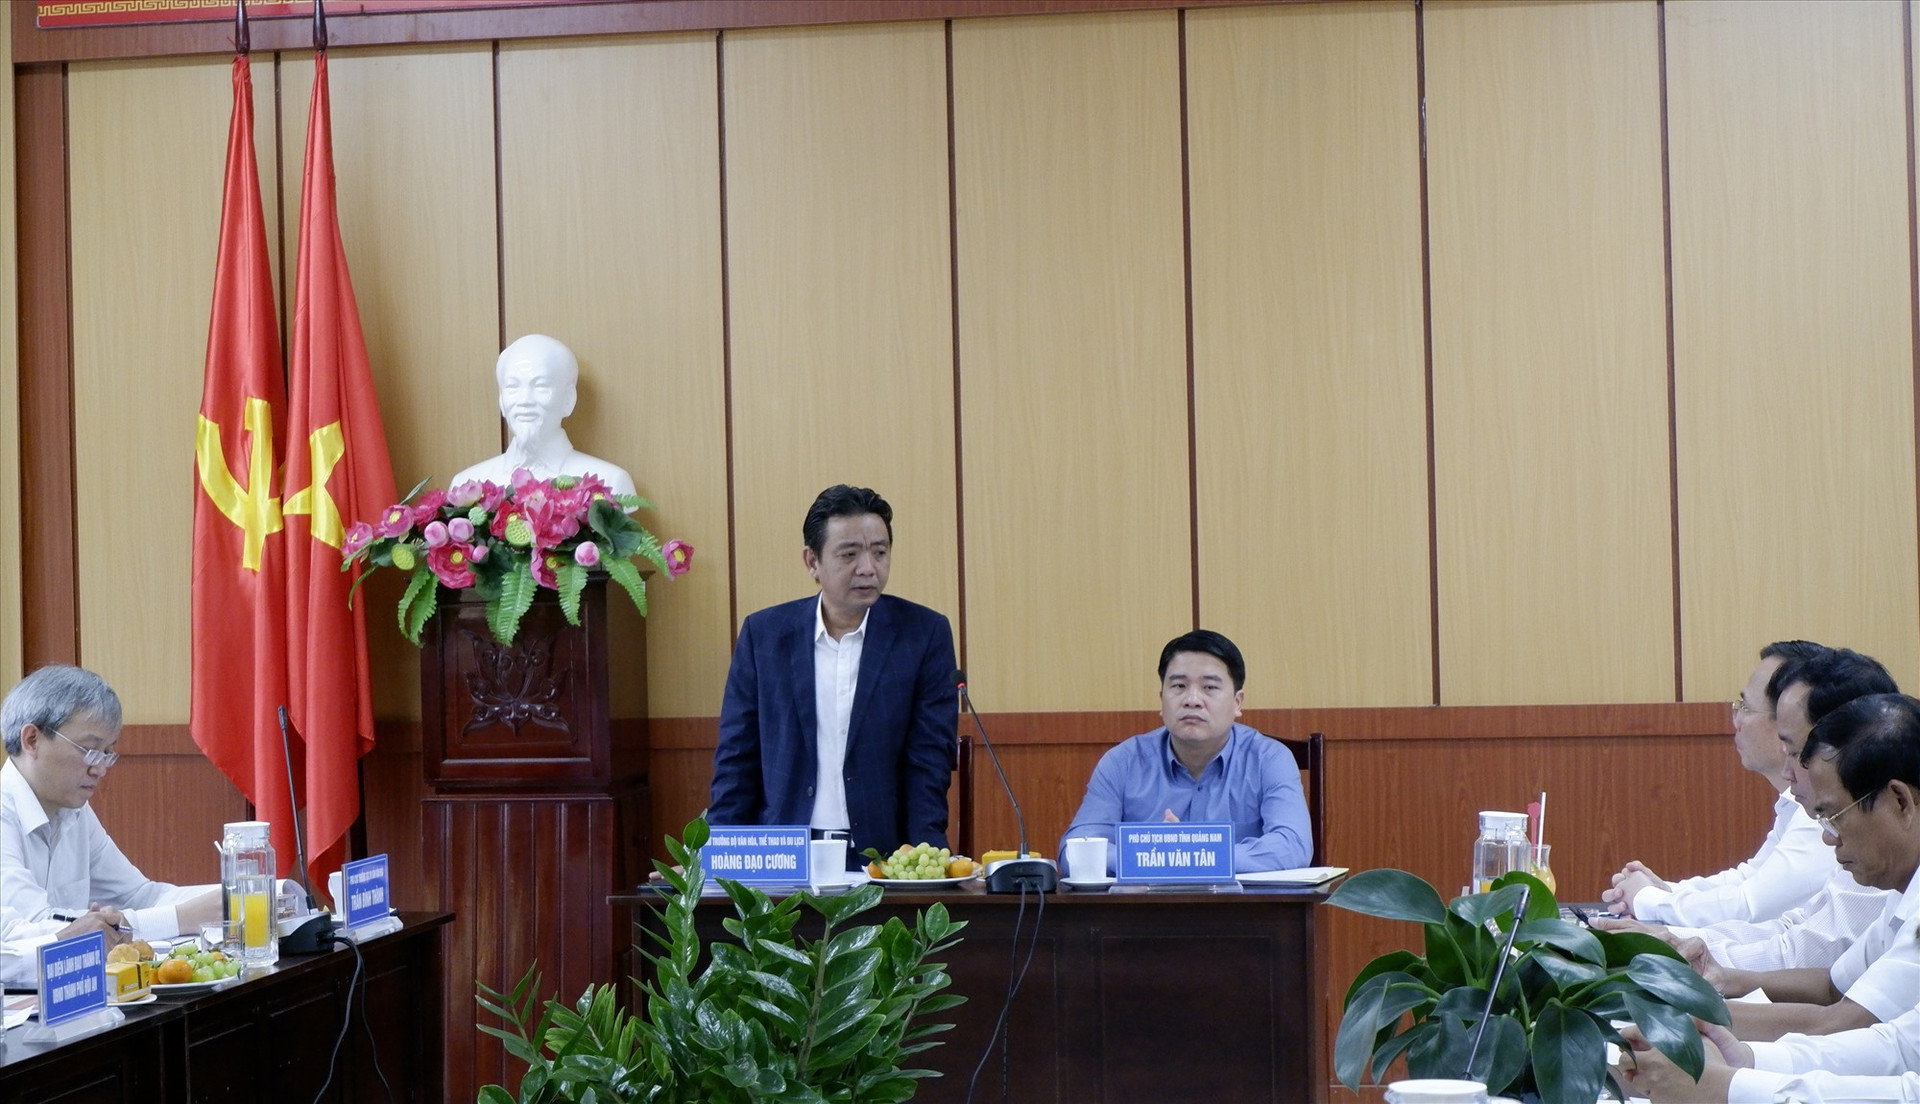 Thứ trưởng Hoàng Đạo Cương và Phó Chủ tịch UBND tỉnh Trần Văn Tân chủ trì buổi làm việc về các vấn đề của di sản tại Quảng Nam, trong đó nhấn mạnh tính cấp thiết phải trùng tu Chùa Cầu. Ảnh: L.Q